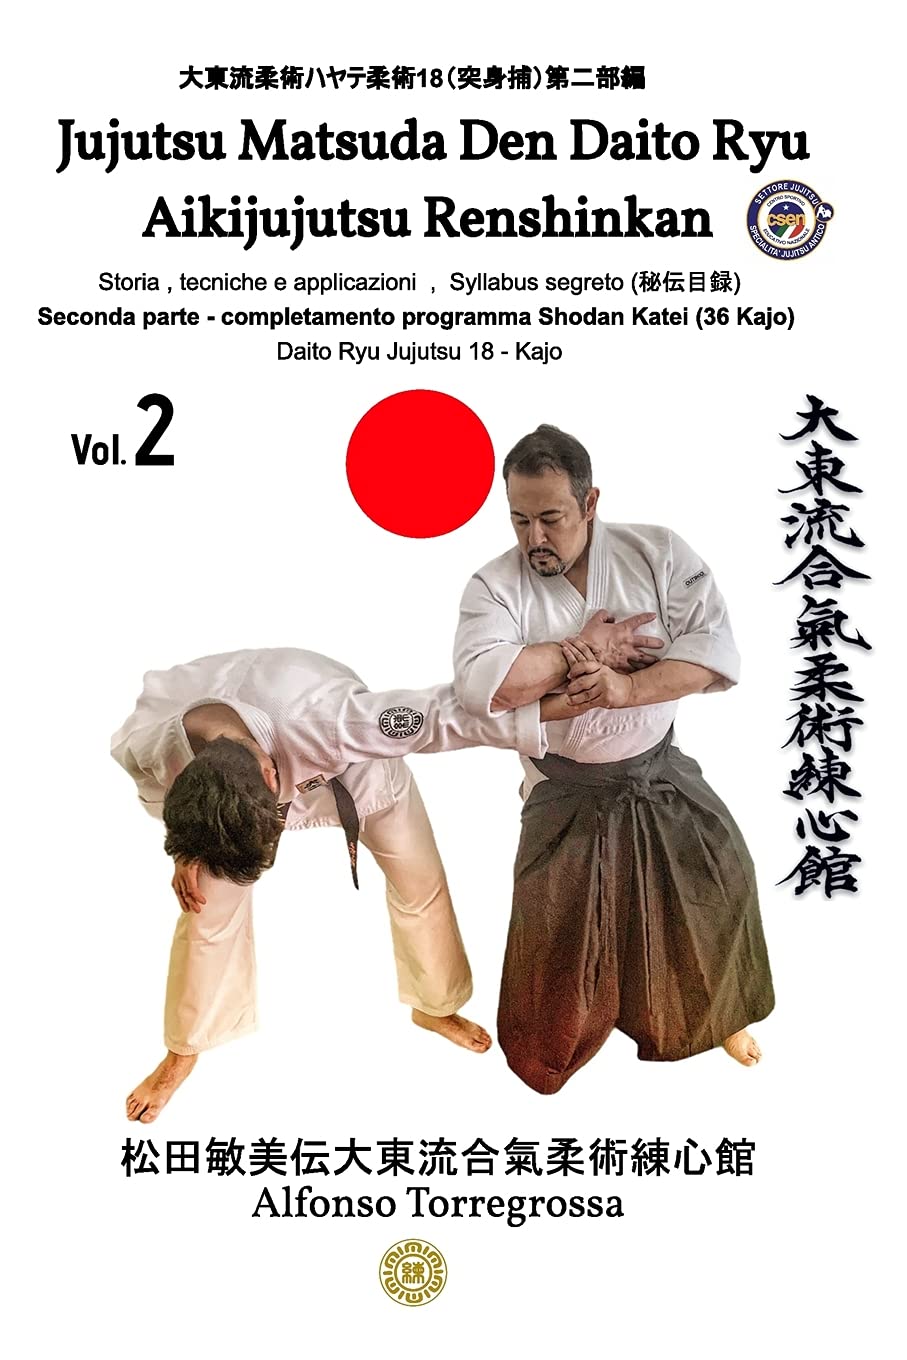 Daito Ryu Aikijujutsu Renshinkan Book 2 by Alfonso Torregrossa (Italian)